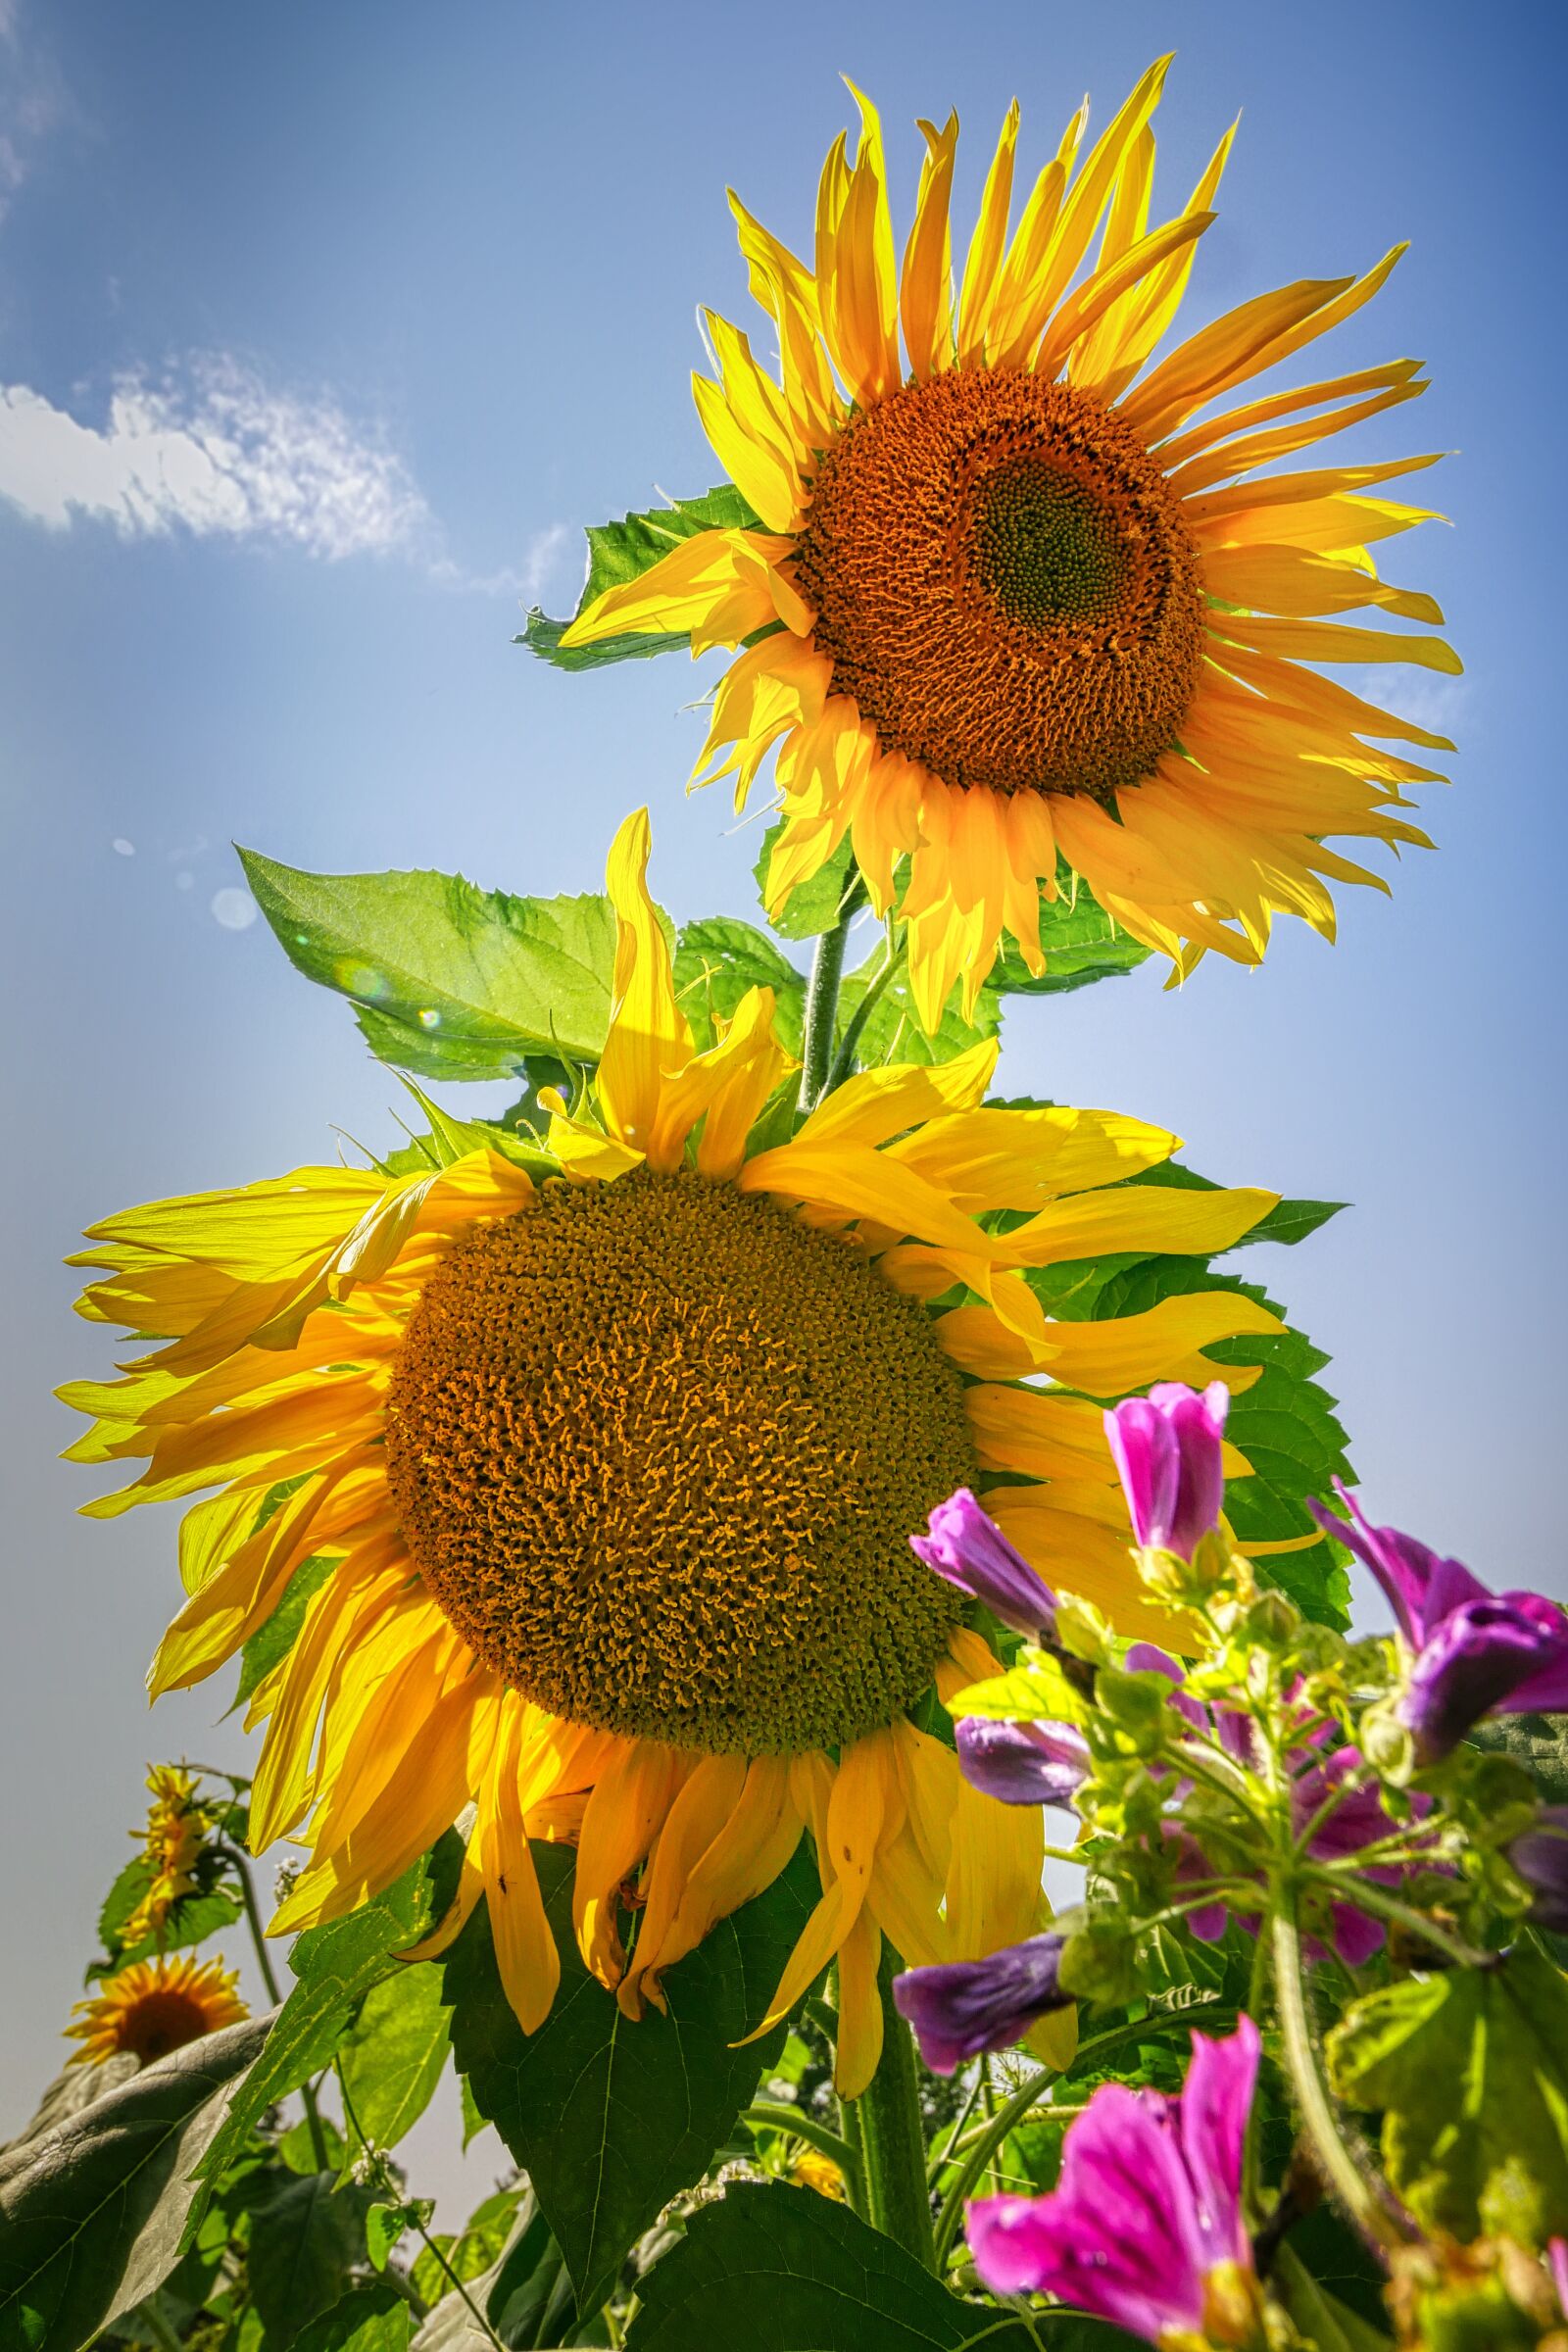 Panasonic Lumix DMC-GX8 sample photo. Sunflower, yellow, flower photography